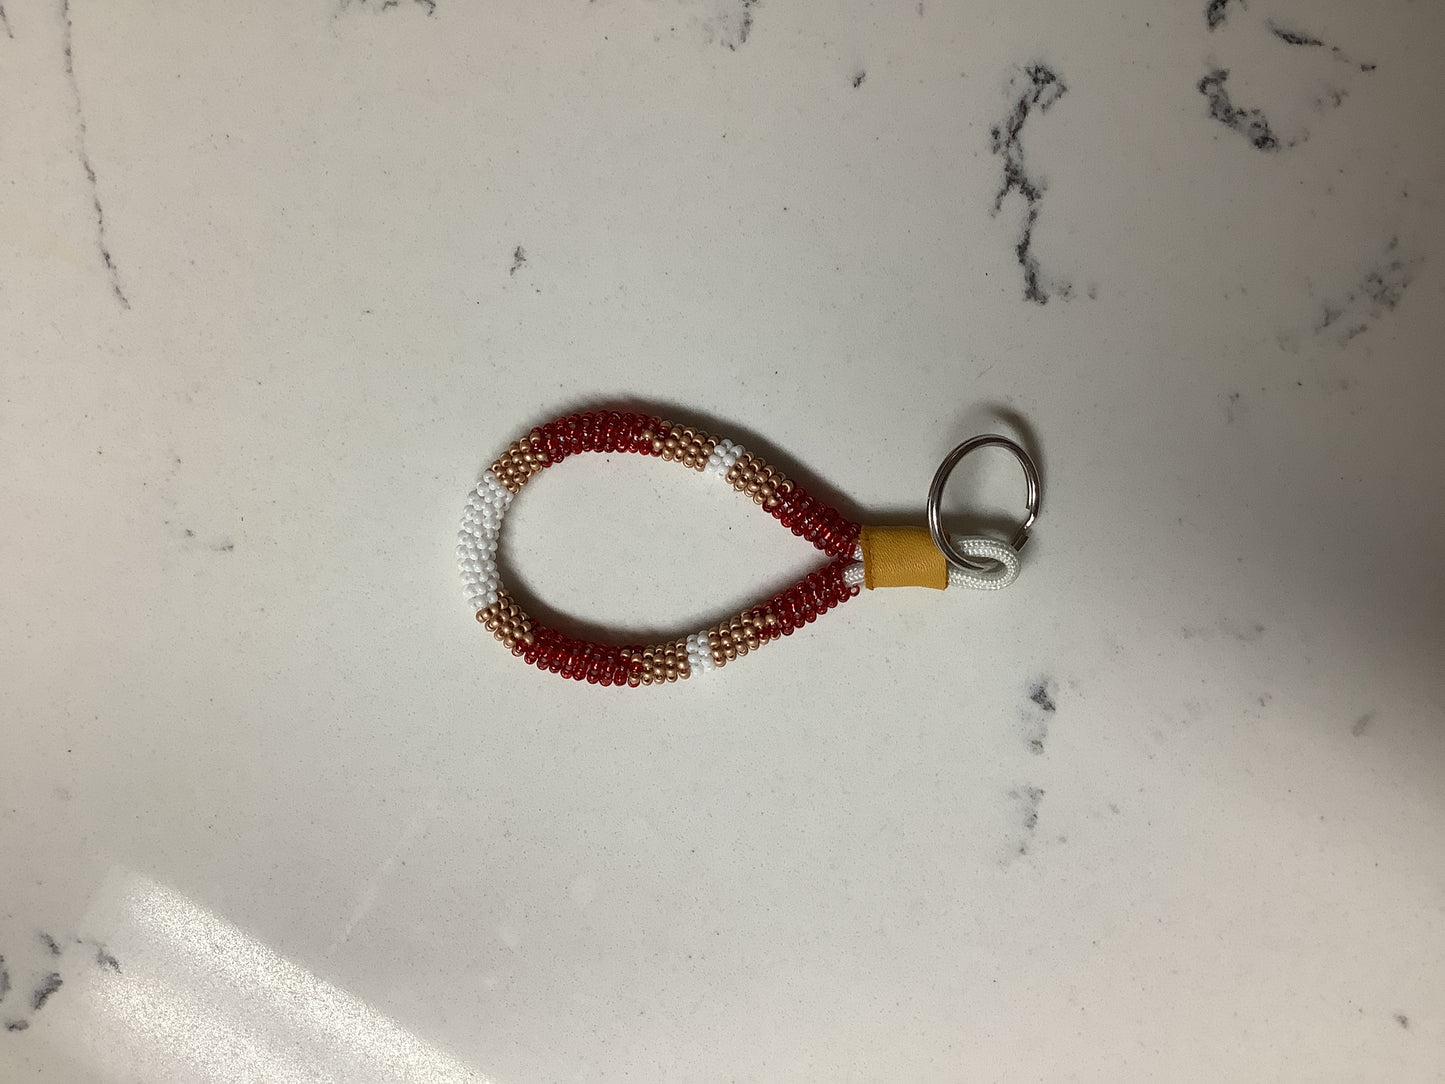 Mini beaded key-pull